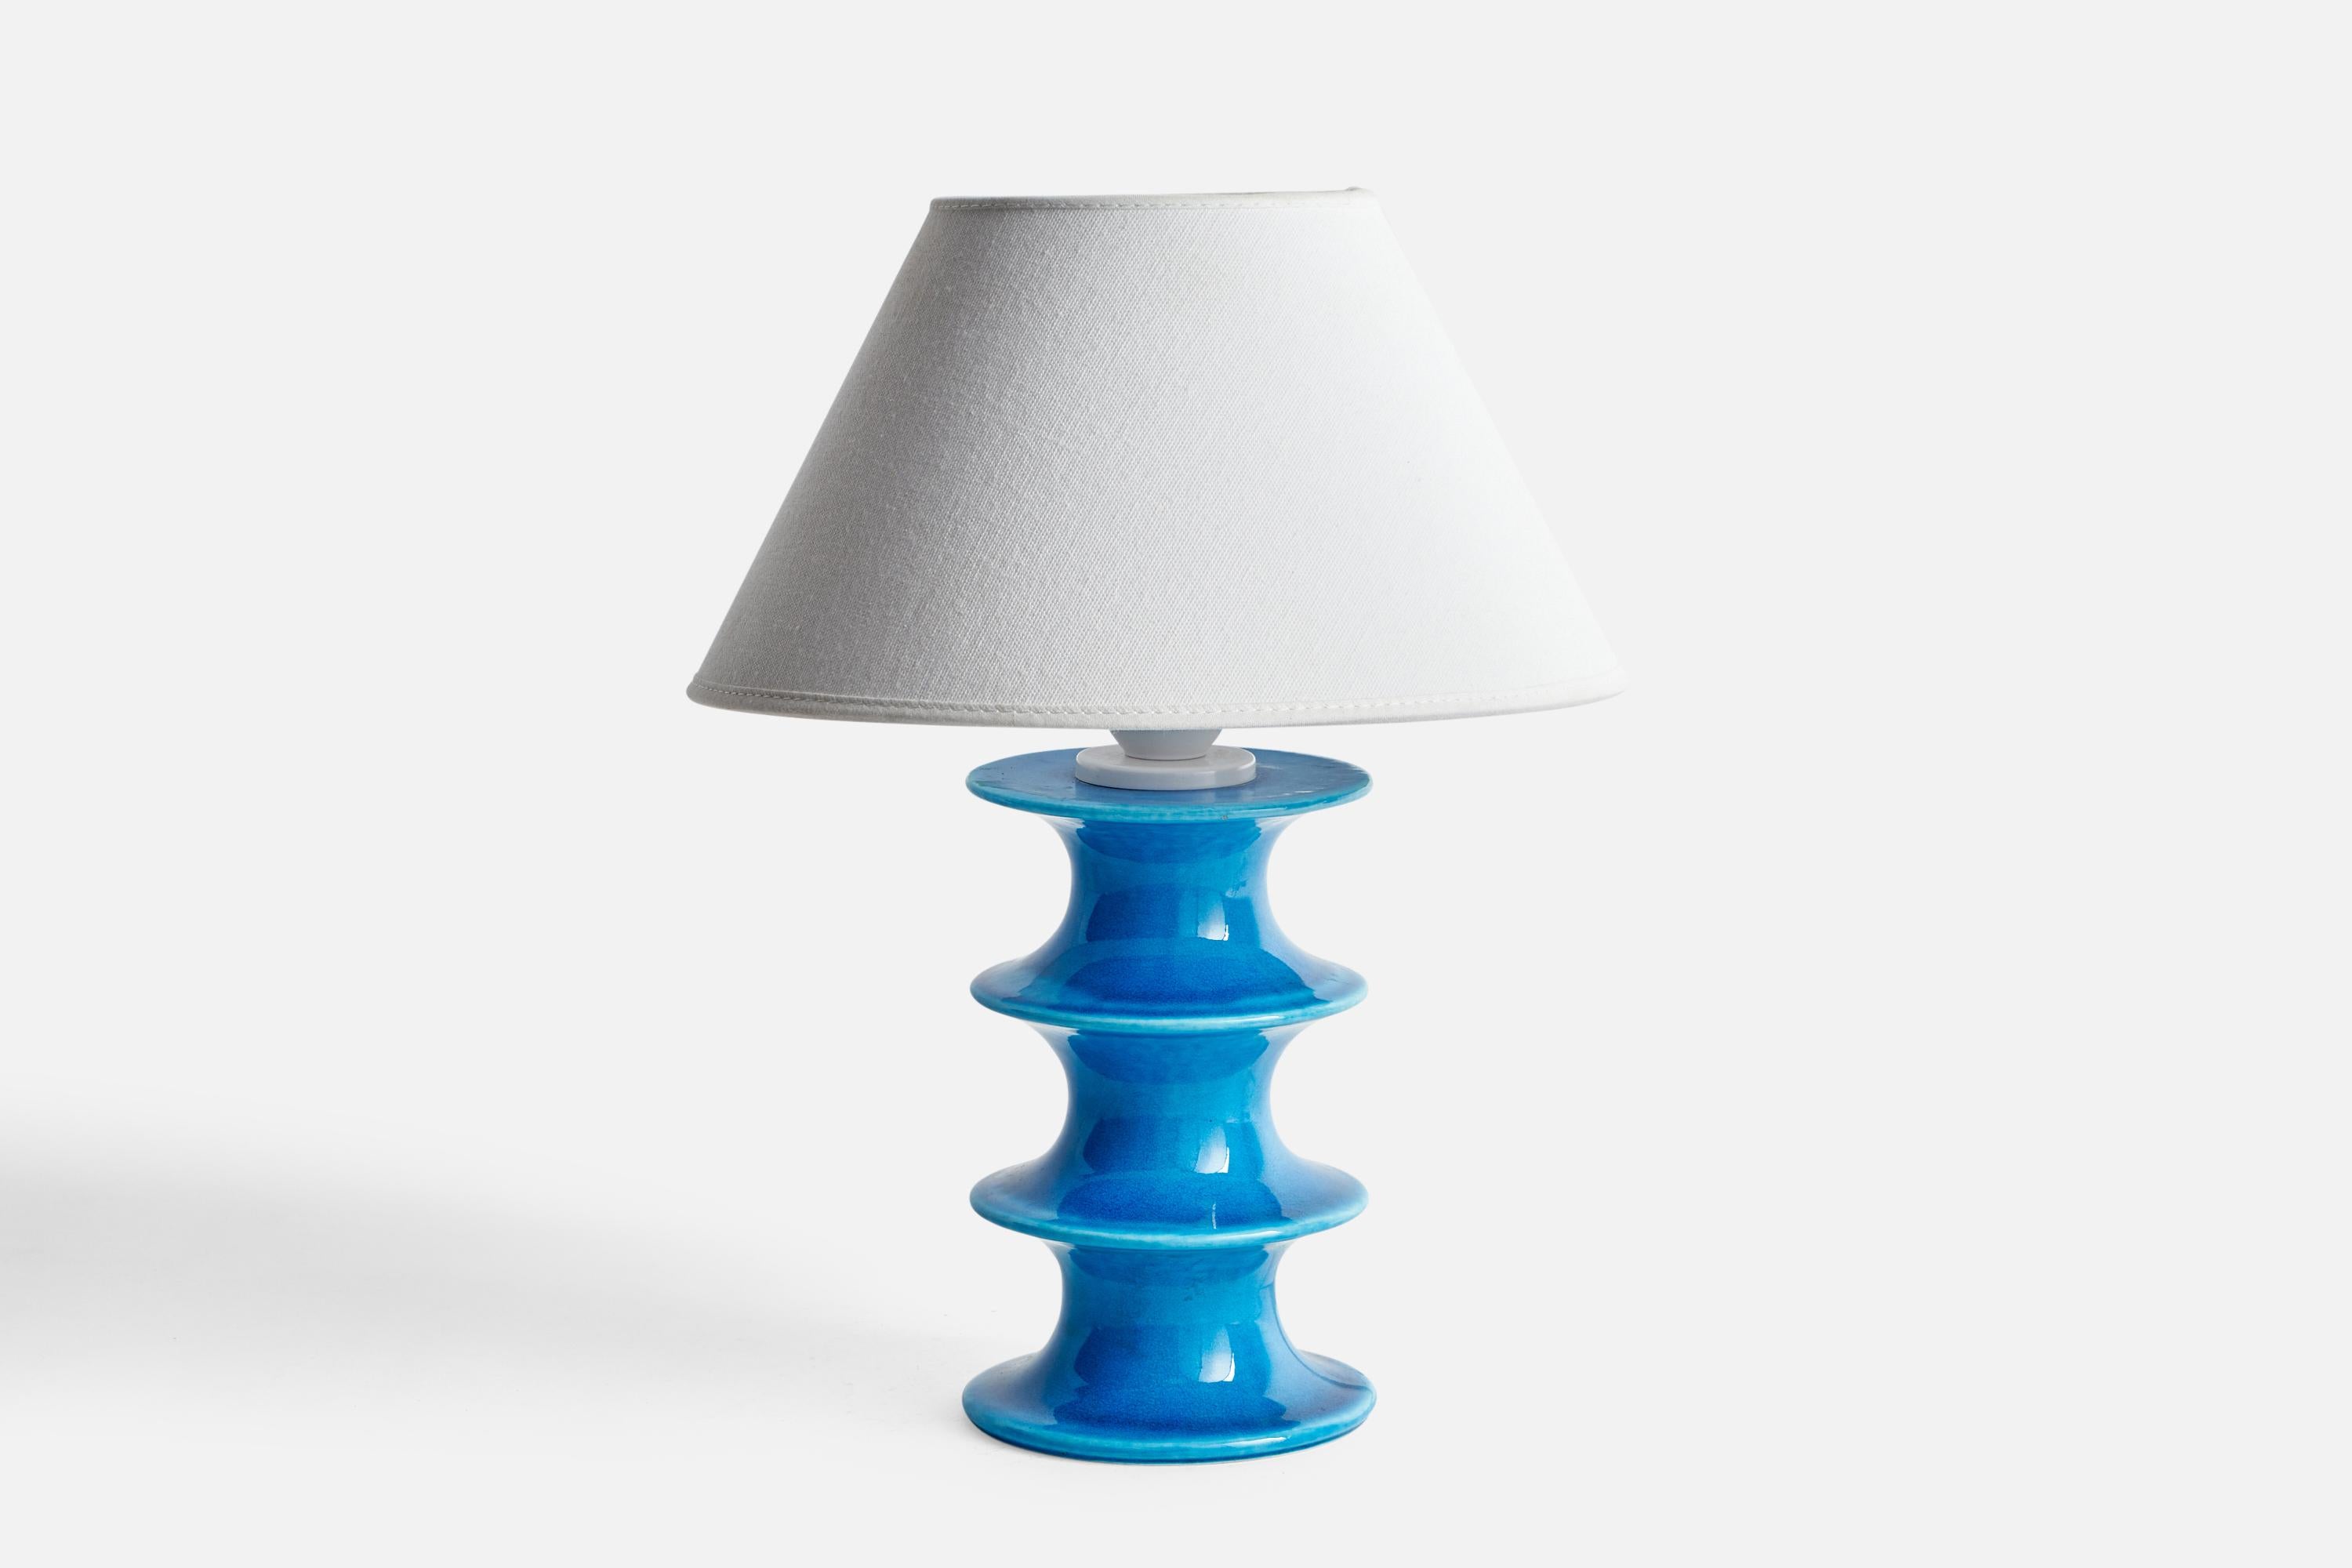 Lampe de table en grès émaillé bleu, conçue par Inger Persson et produite par Rörstrand, Suède, années 1960.

Dimensions de la lampe (pouces) : 9.45